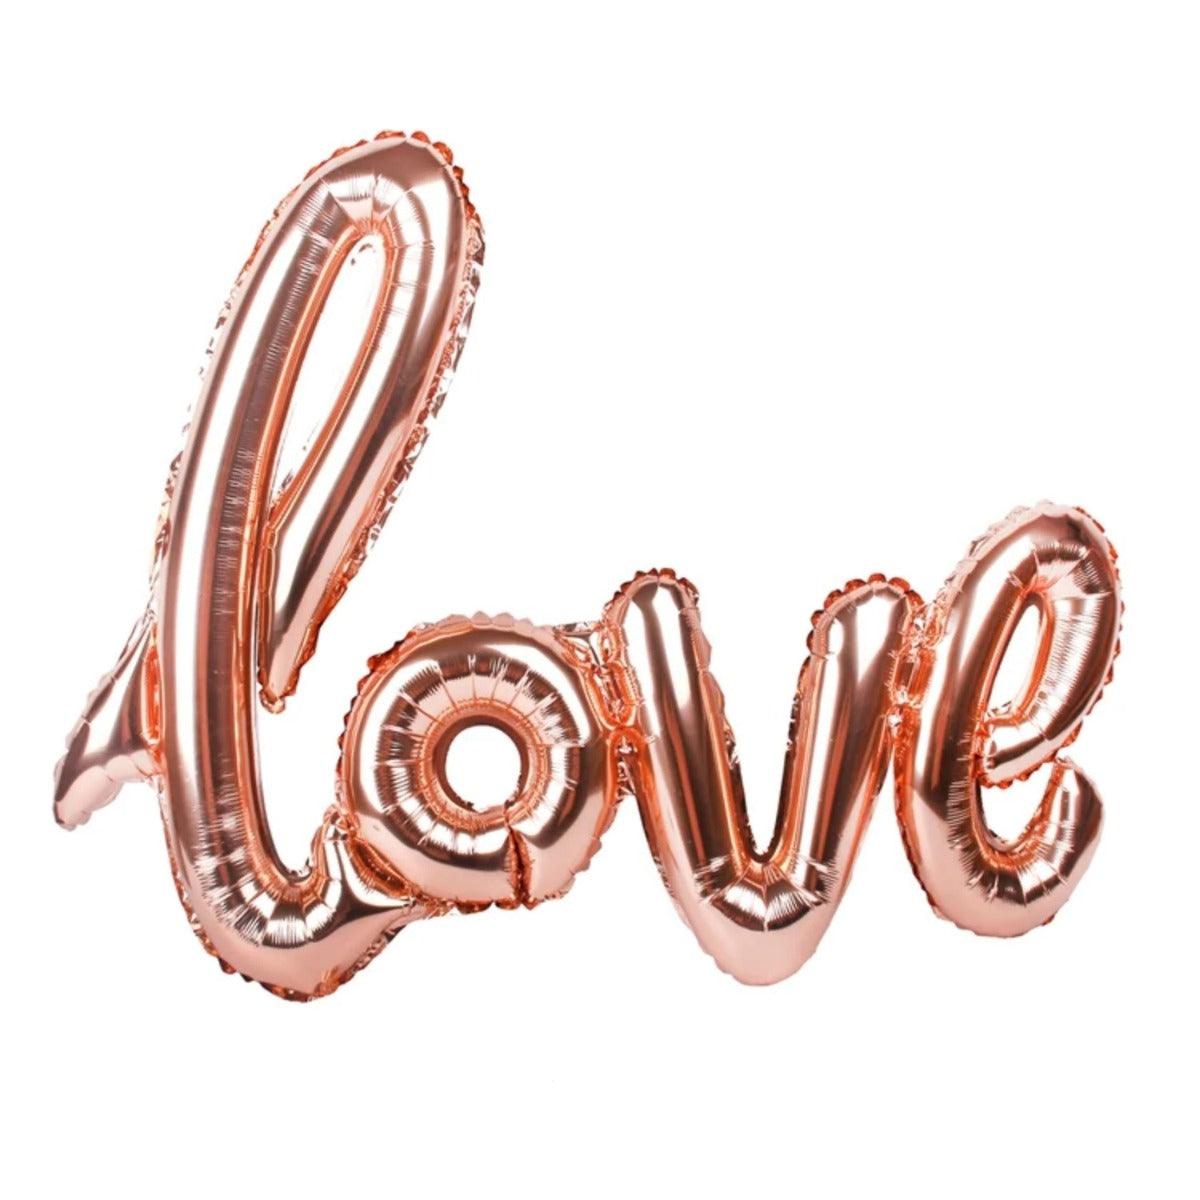 PartyCorp Rose Gold Cursive Big Love Alphabet/Letter Foil Balloon Banner Decoration Set, 1 pc